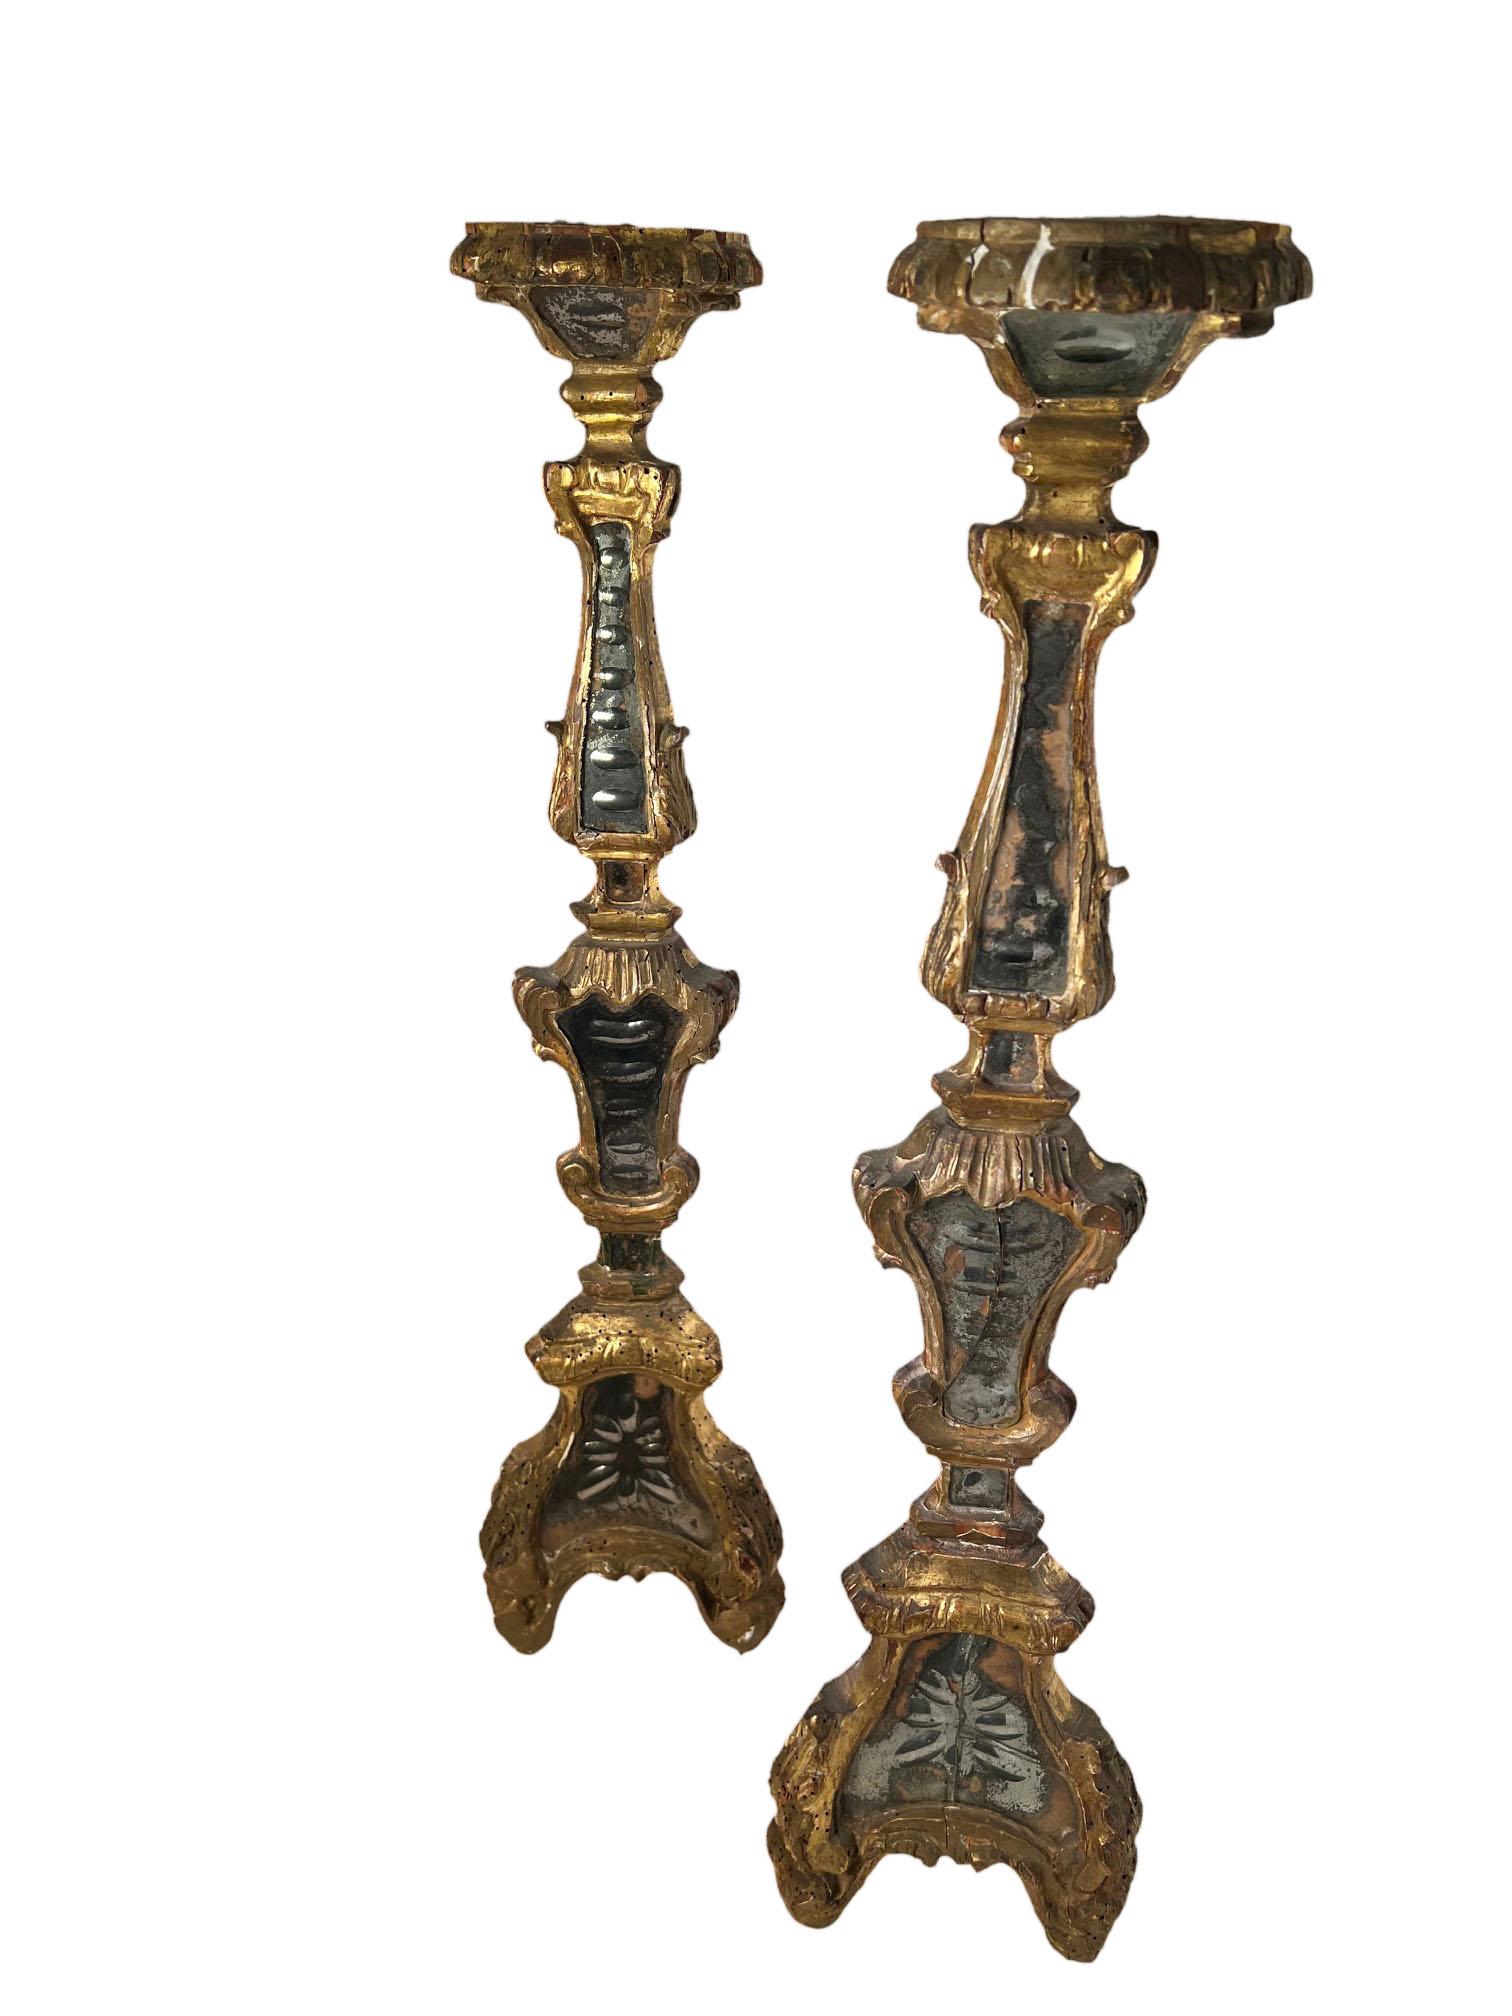 Paire de chandeliers italiens avec miroirs gravés. Deux des miroirs sont fissurés. Italie, vers 1800.  